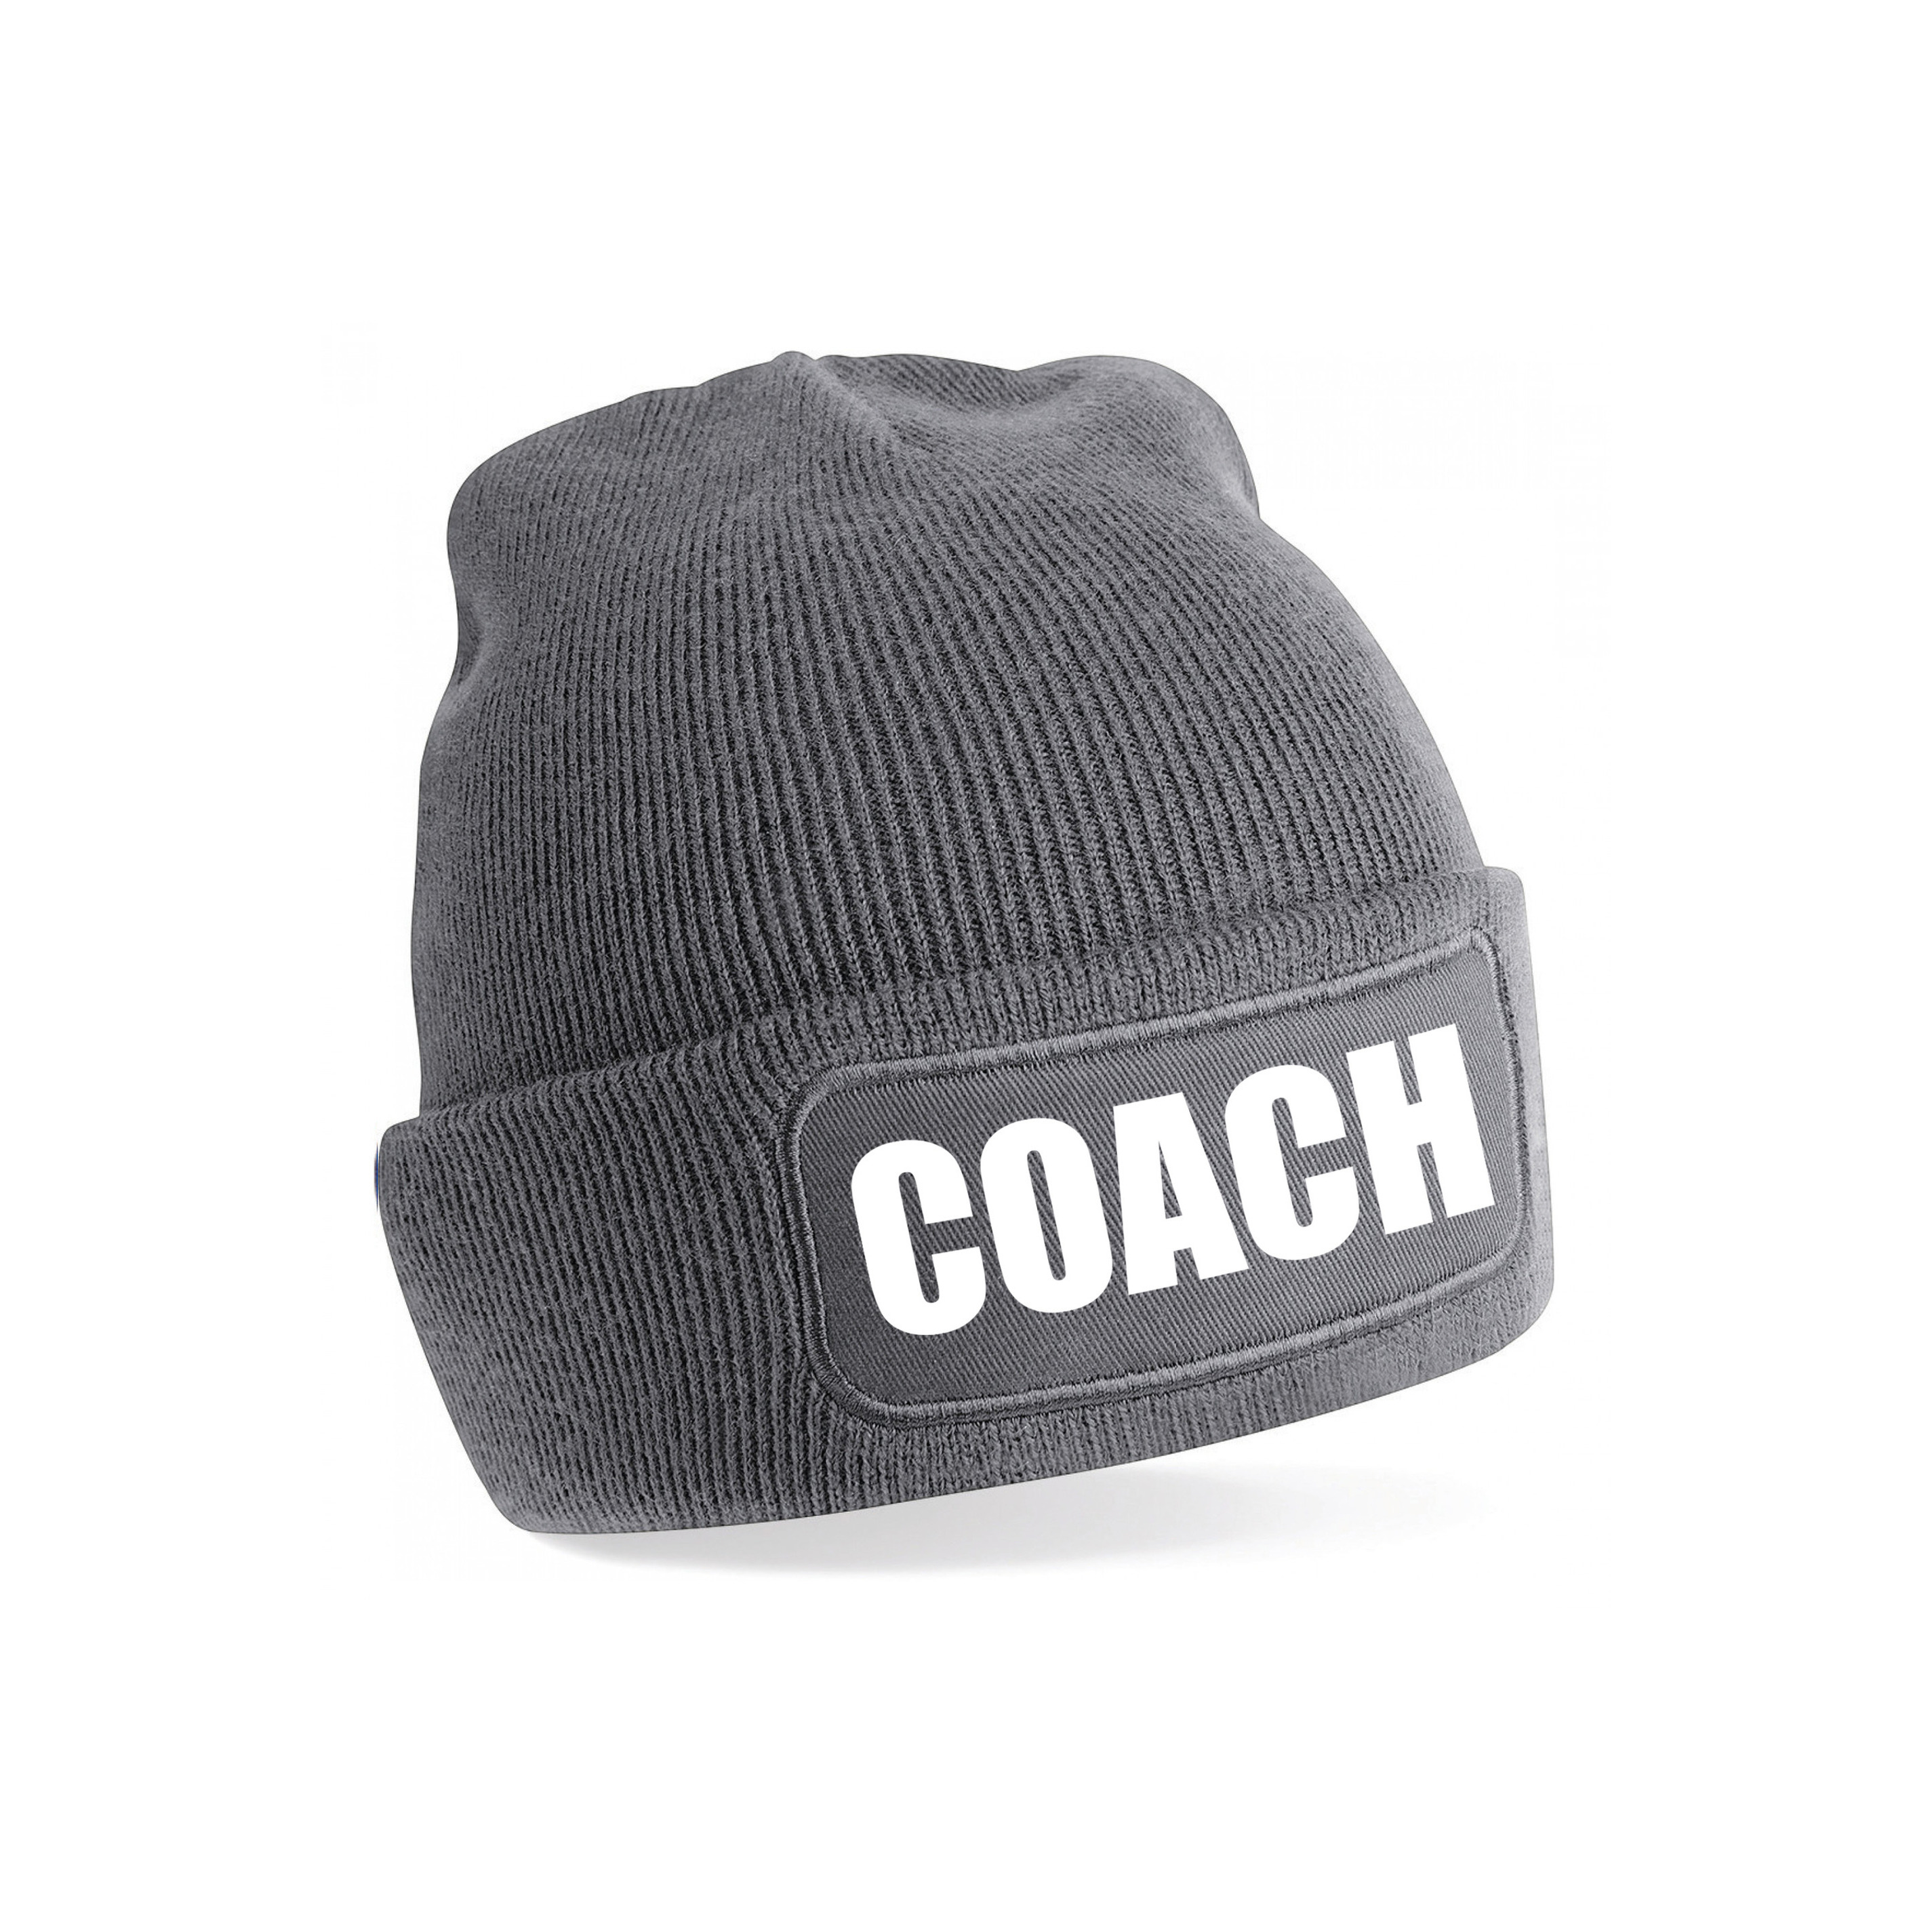 Coach muts voor volwassenen grijs trainer-coach wintermuts beanie one size unisex